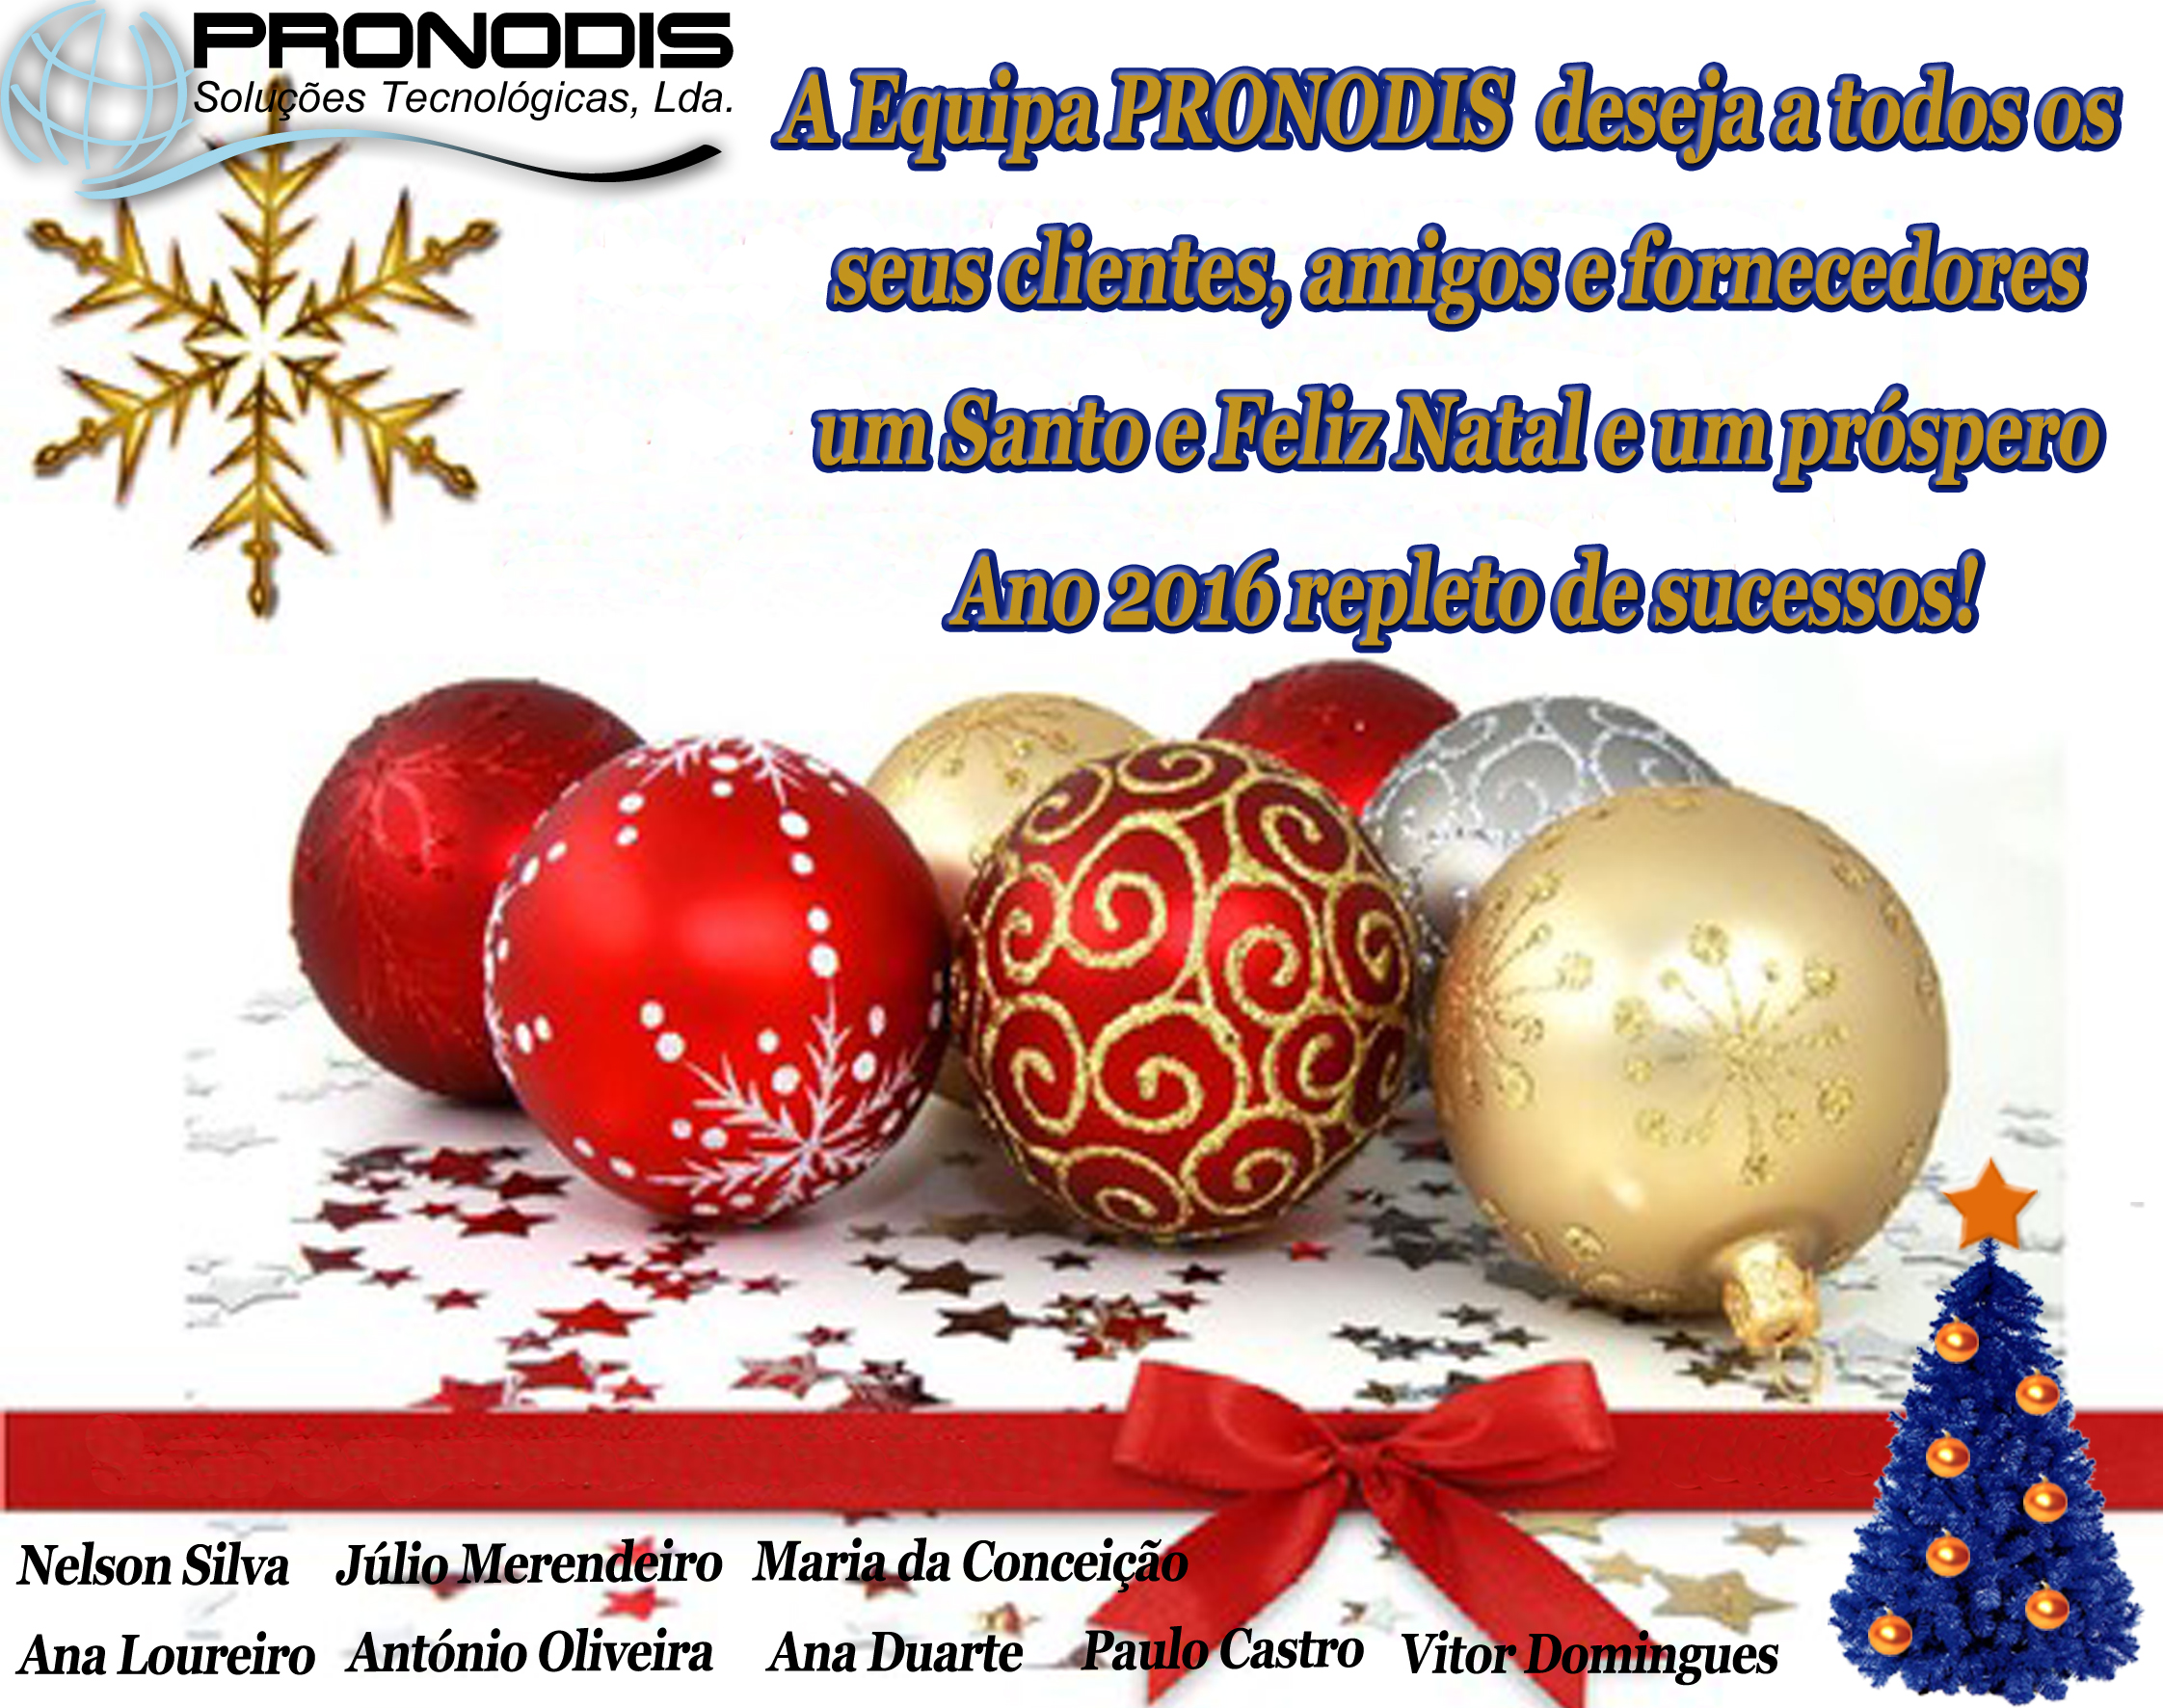 A Equipa Pronodis desejas a todos os seus amigos, clientes e fornecedores umas Boas Festas!!